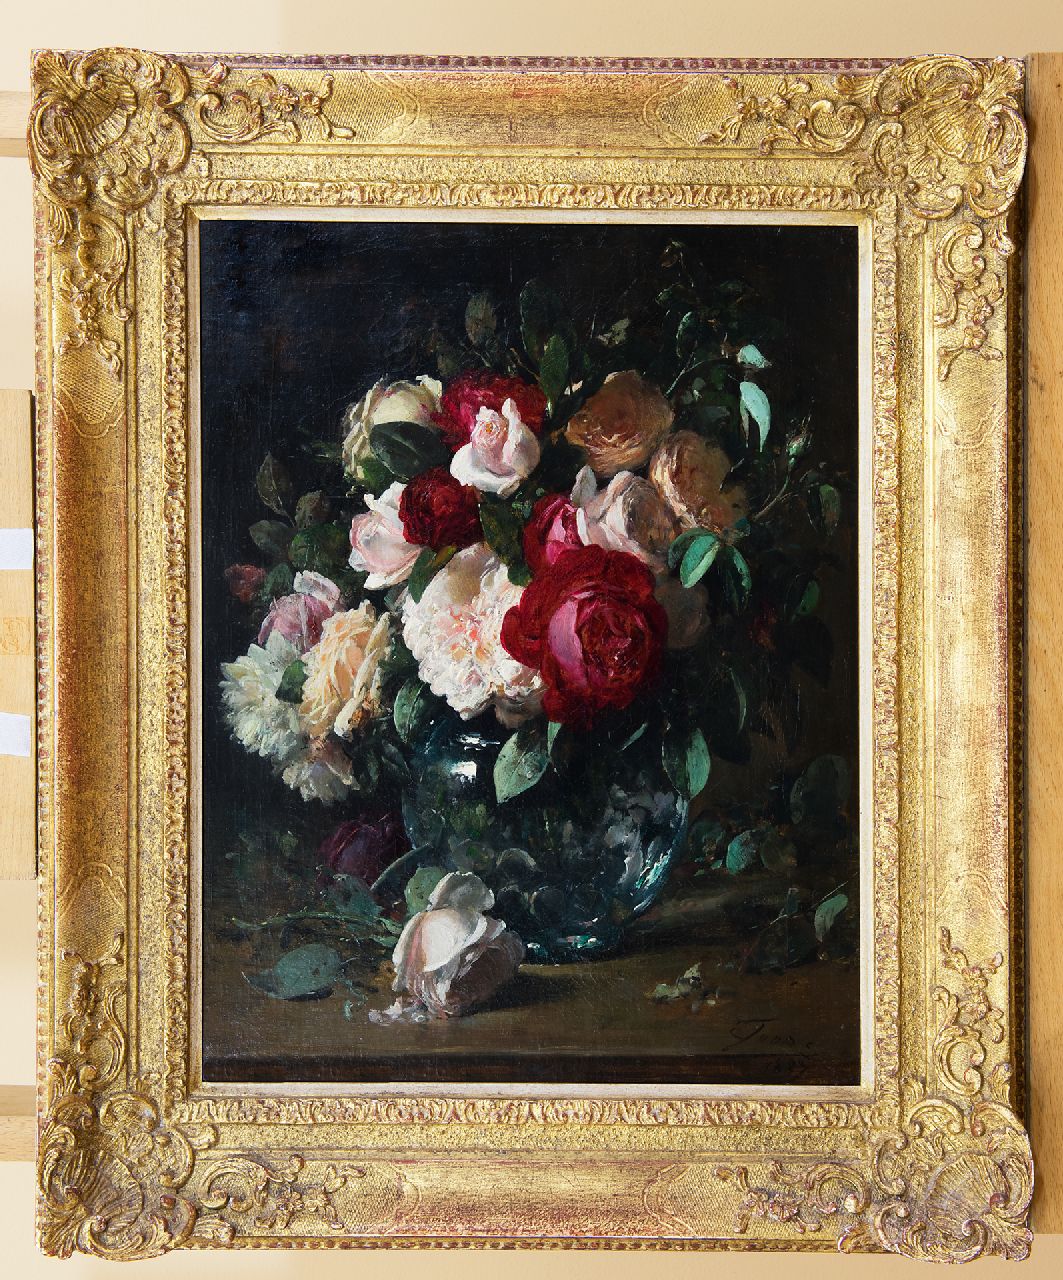 Joors E.  | Eugeen Joors | Schilderijen te koop aangeboden | Rozen in een glazen vaas, olieverf op doek 45,5 x 35,6 cm, gesigneerd rechtsonder en gedateerd 1887